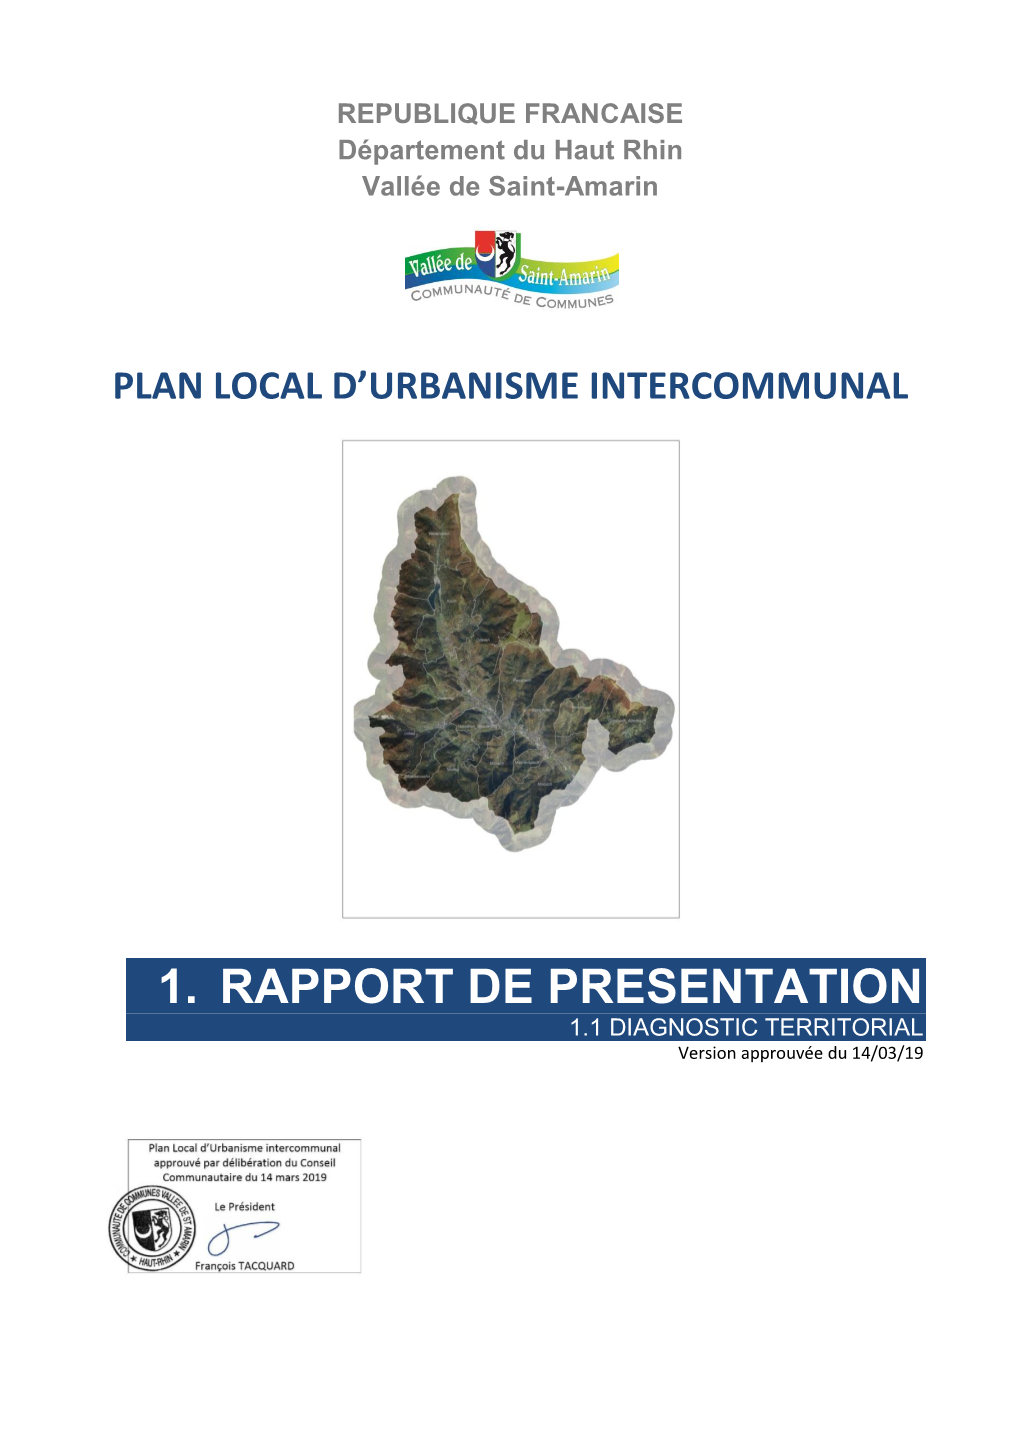 1. RAPPORT DE PRESENTATION 1.1 DIAGNOSTIC TERRITORIAL Version Approuvée Du 14/03/19